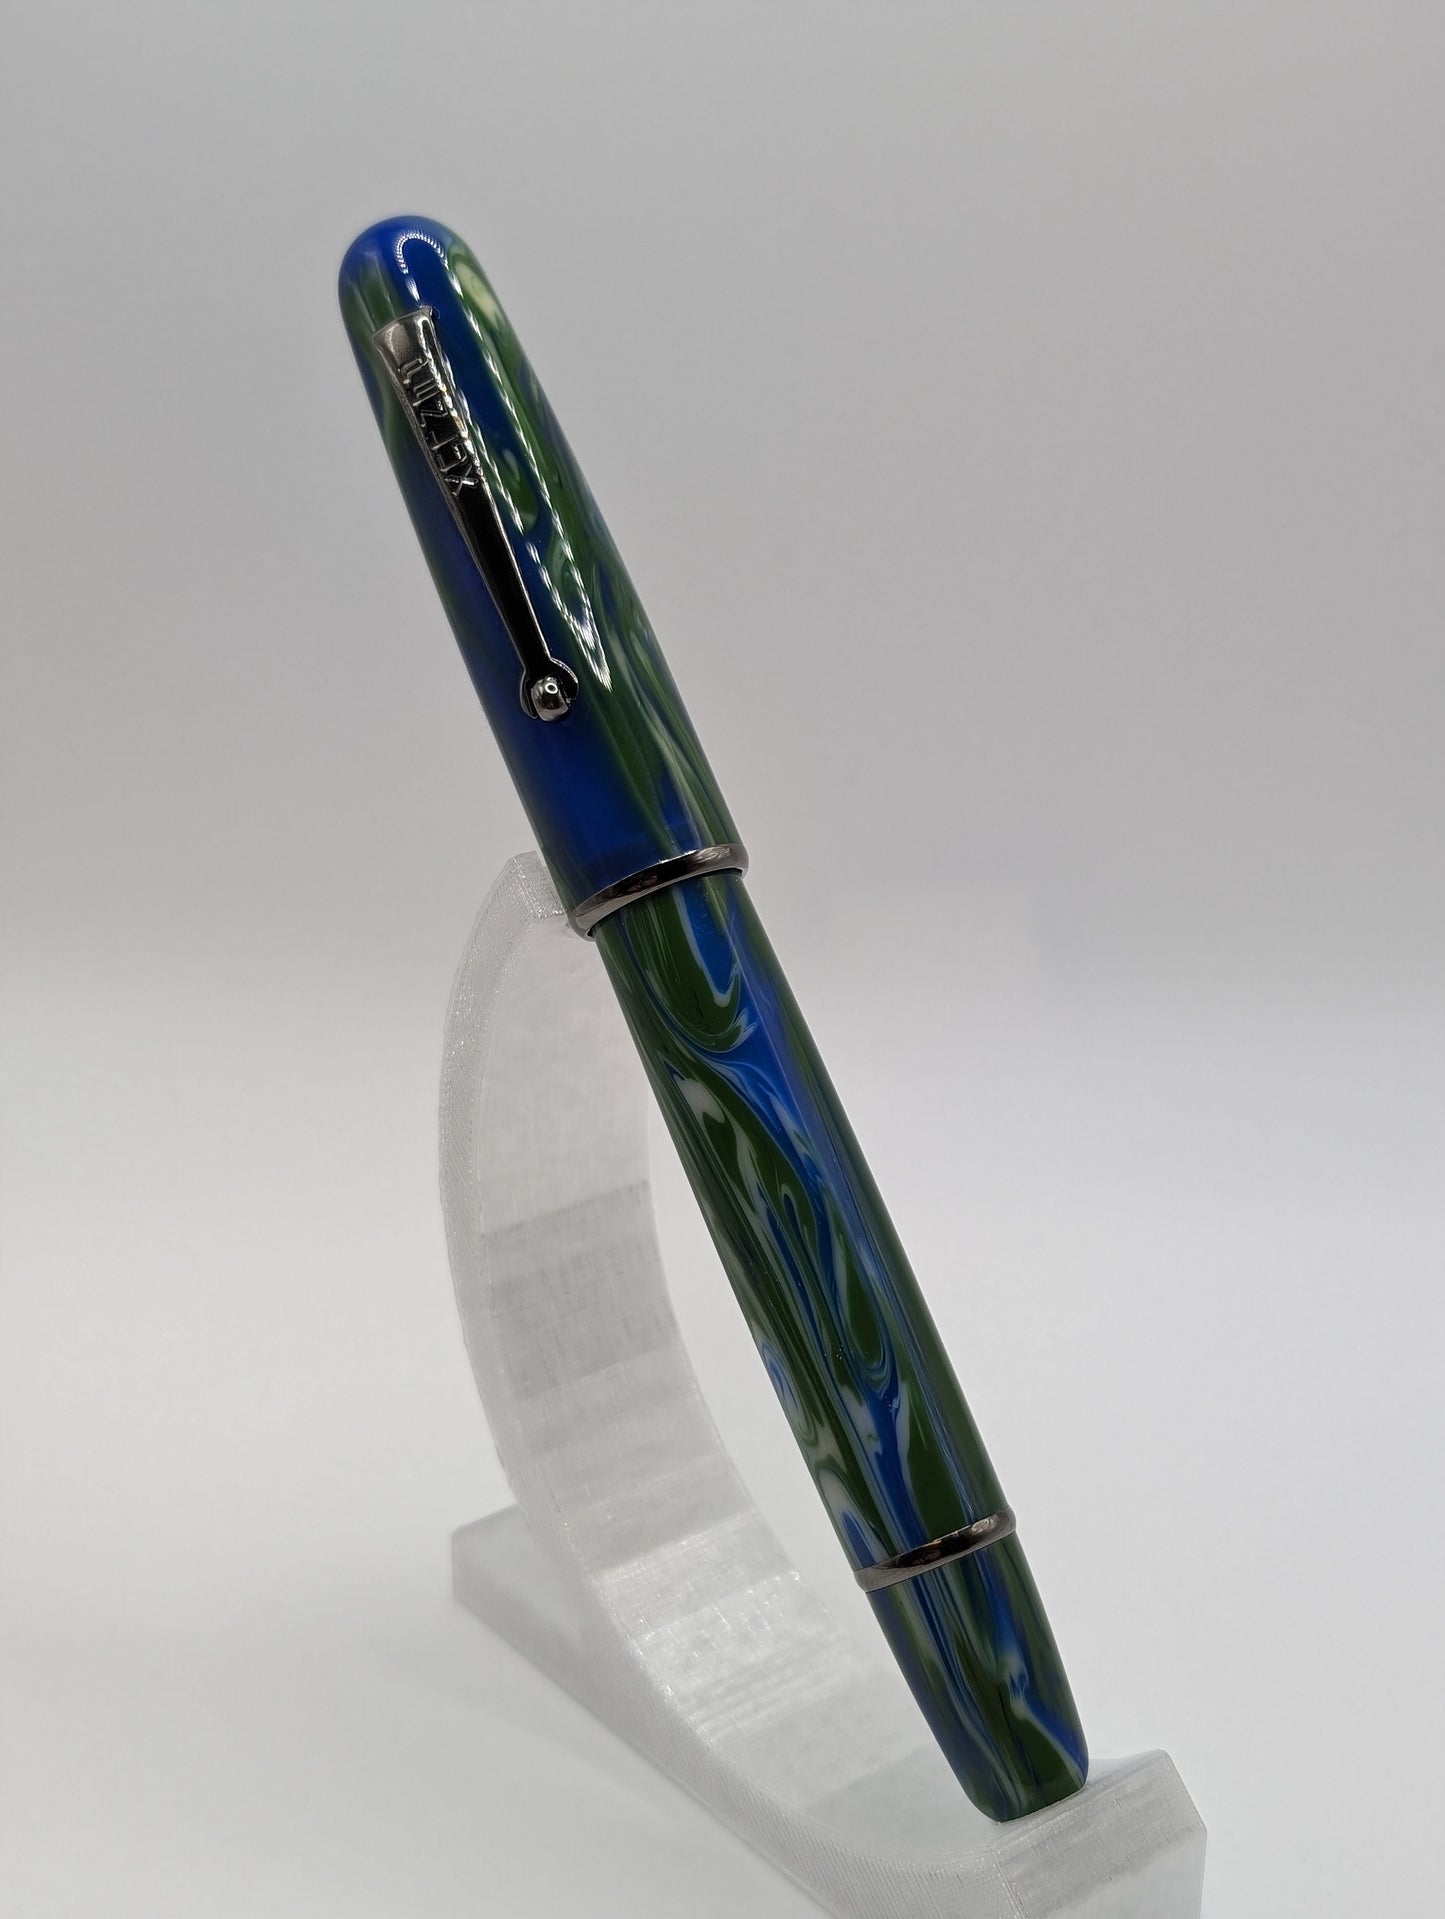 Penlux Limited Edition "The Green Earth" Delgado Fountain Pen